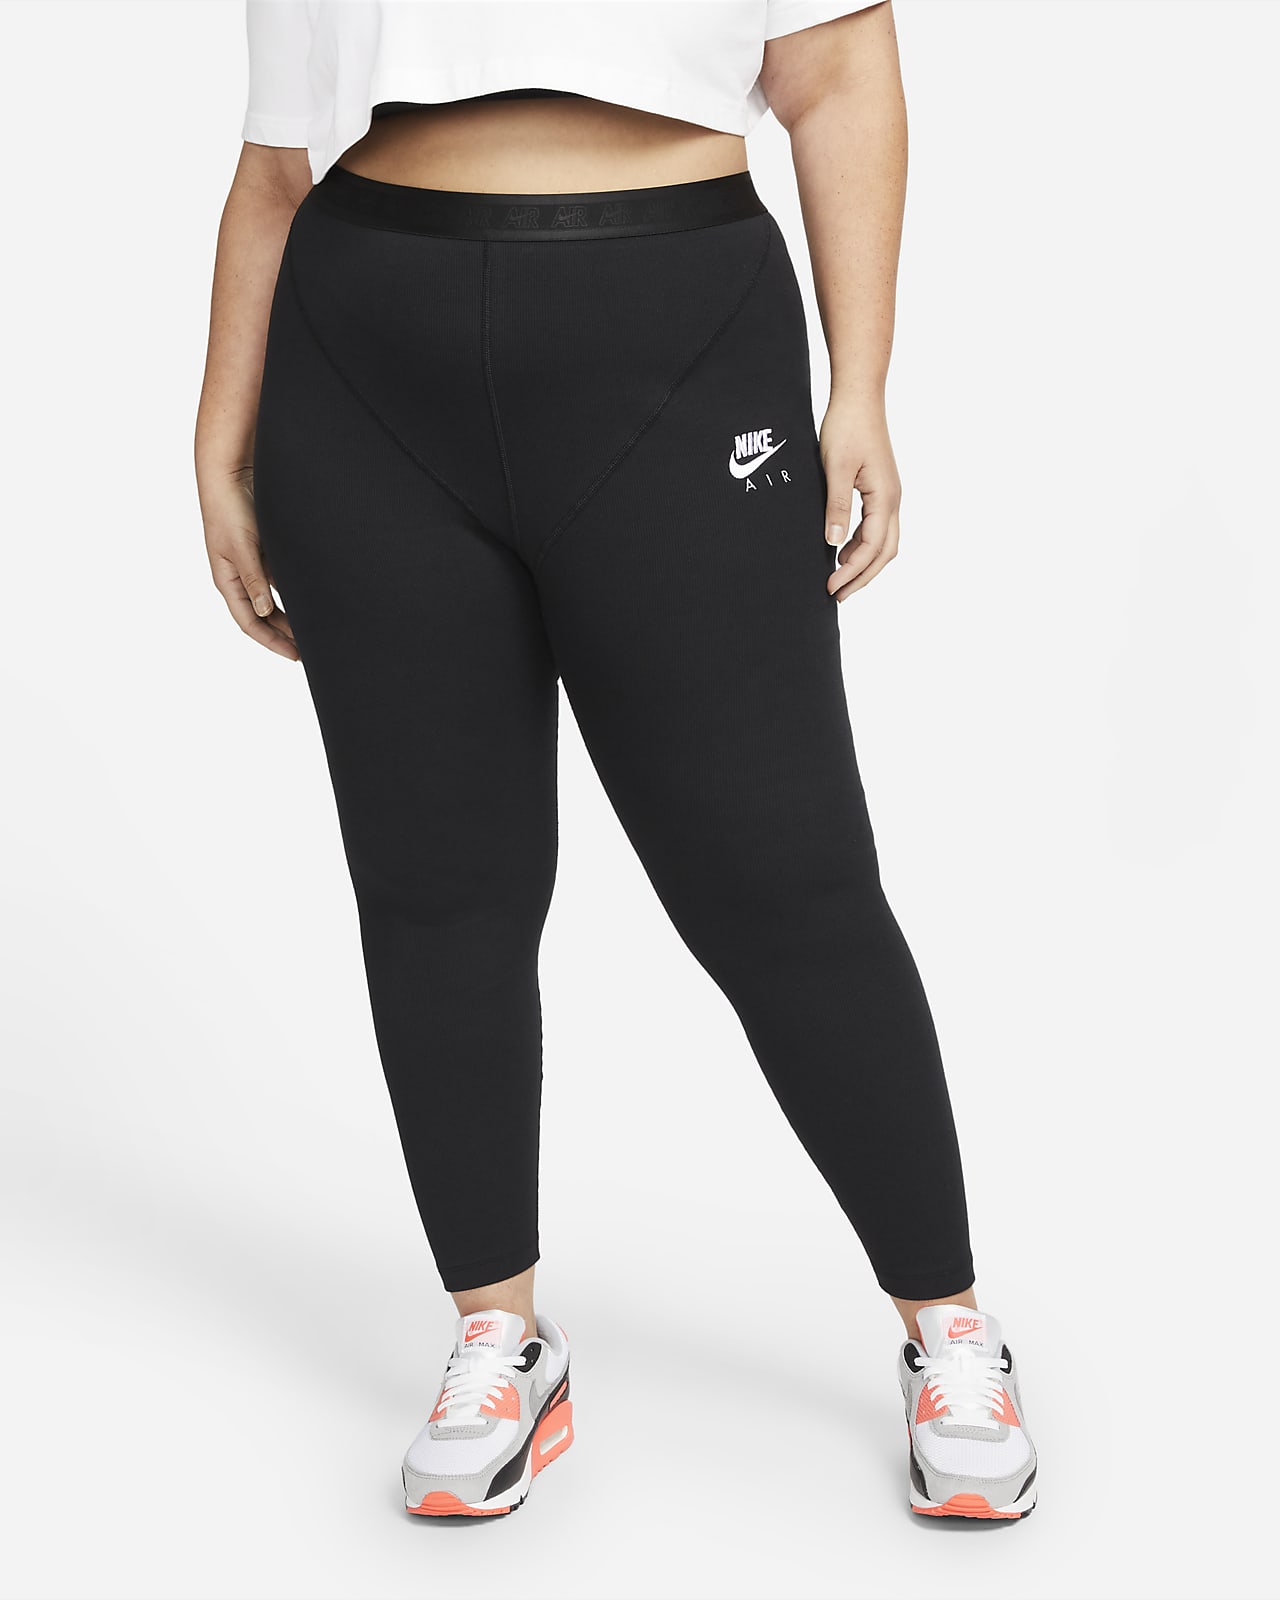 Nike Air gerippte Leggings mit hohem Bund für Damen (große Größe)